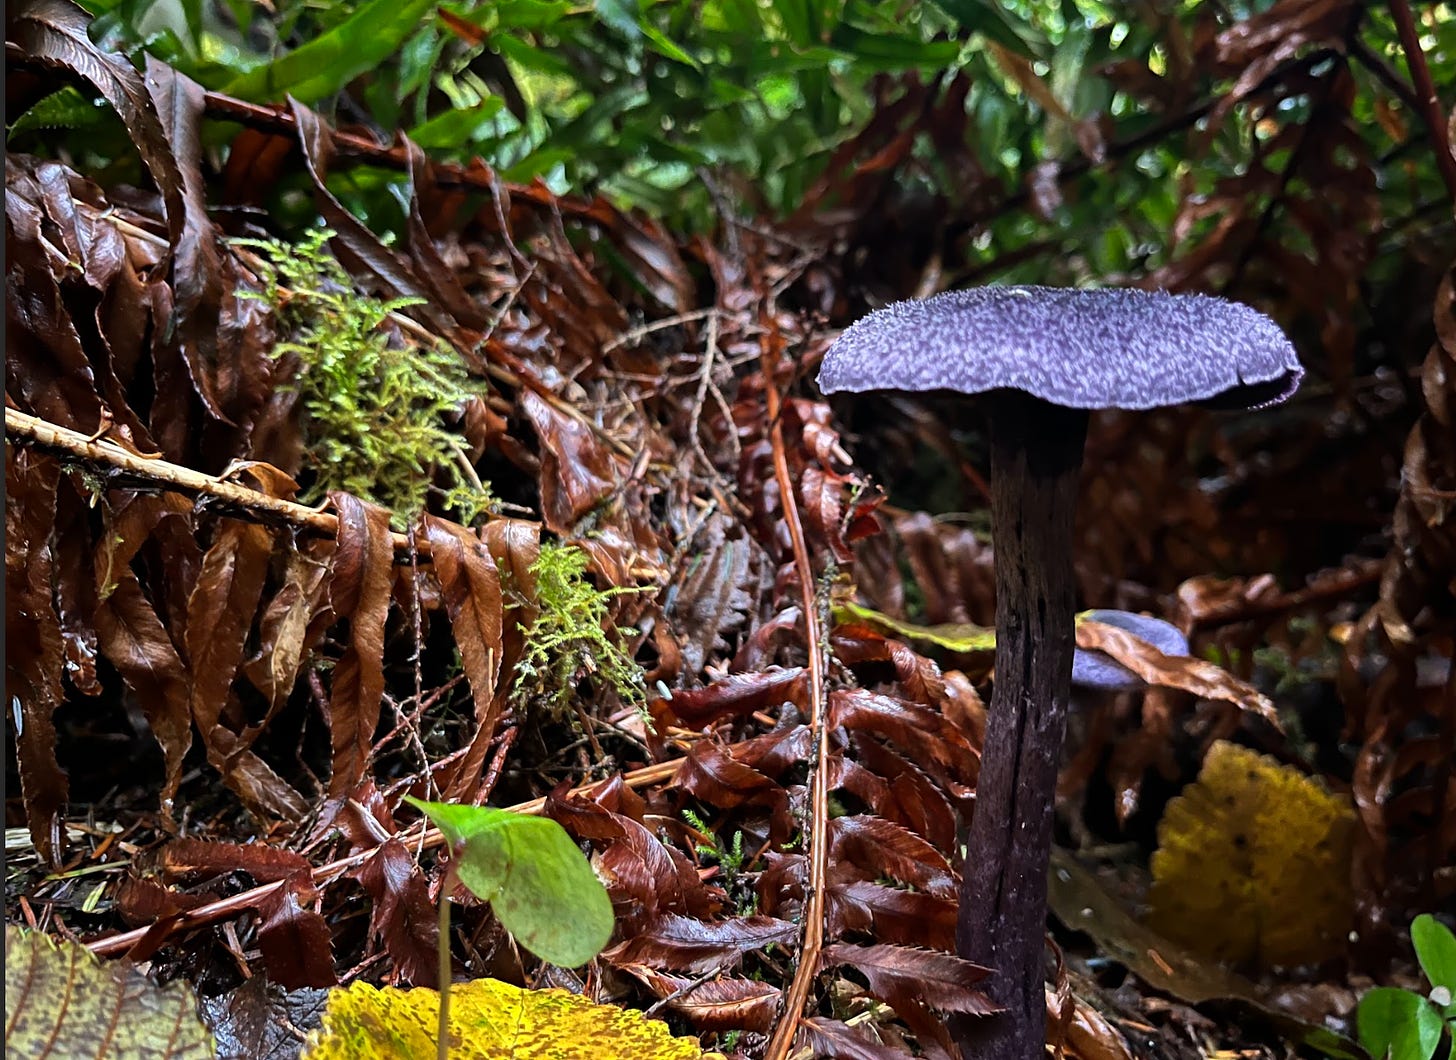 Purple mushroom and the forest floor.